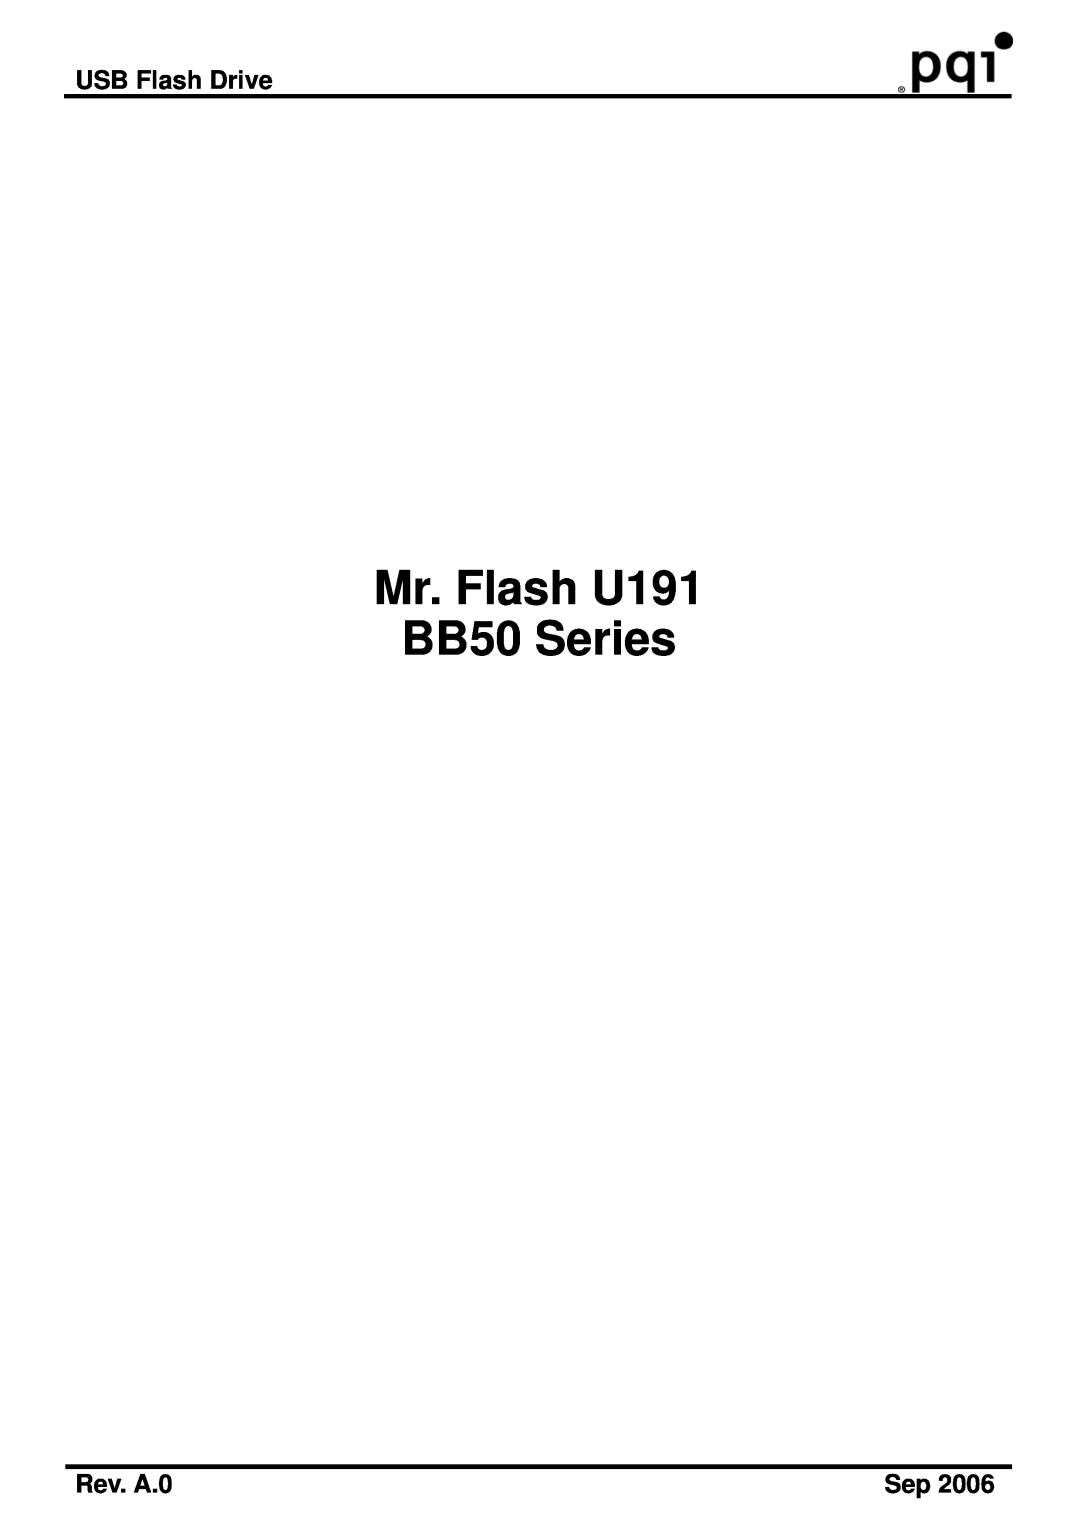 PQI manual USB Flash Drive, Rev. A.0, Mr. Flash U191 BB50 Series 